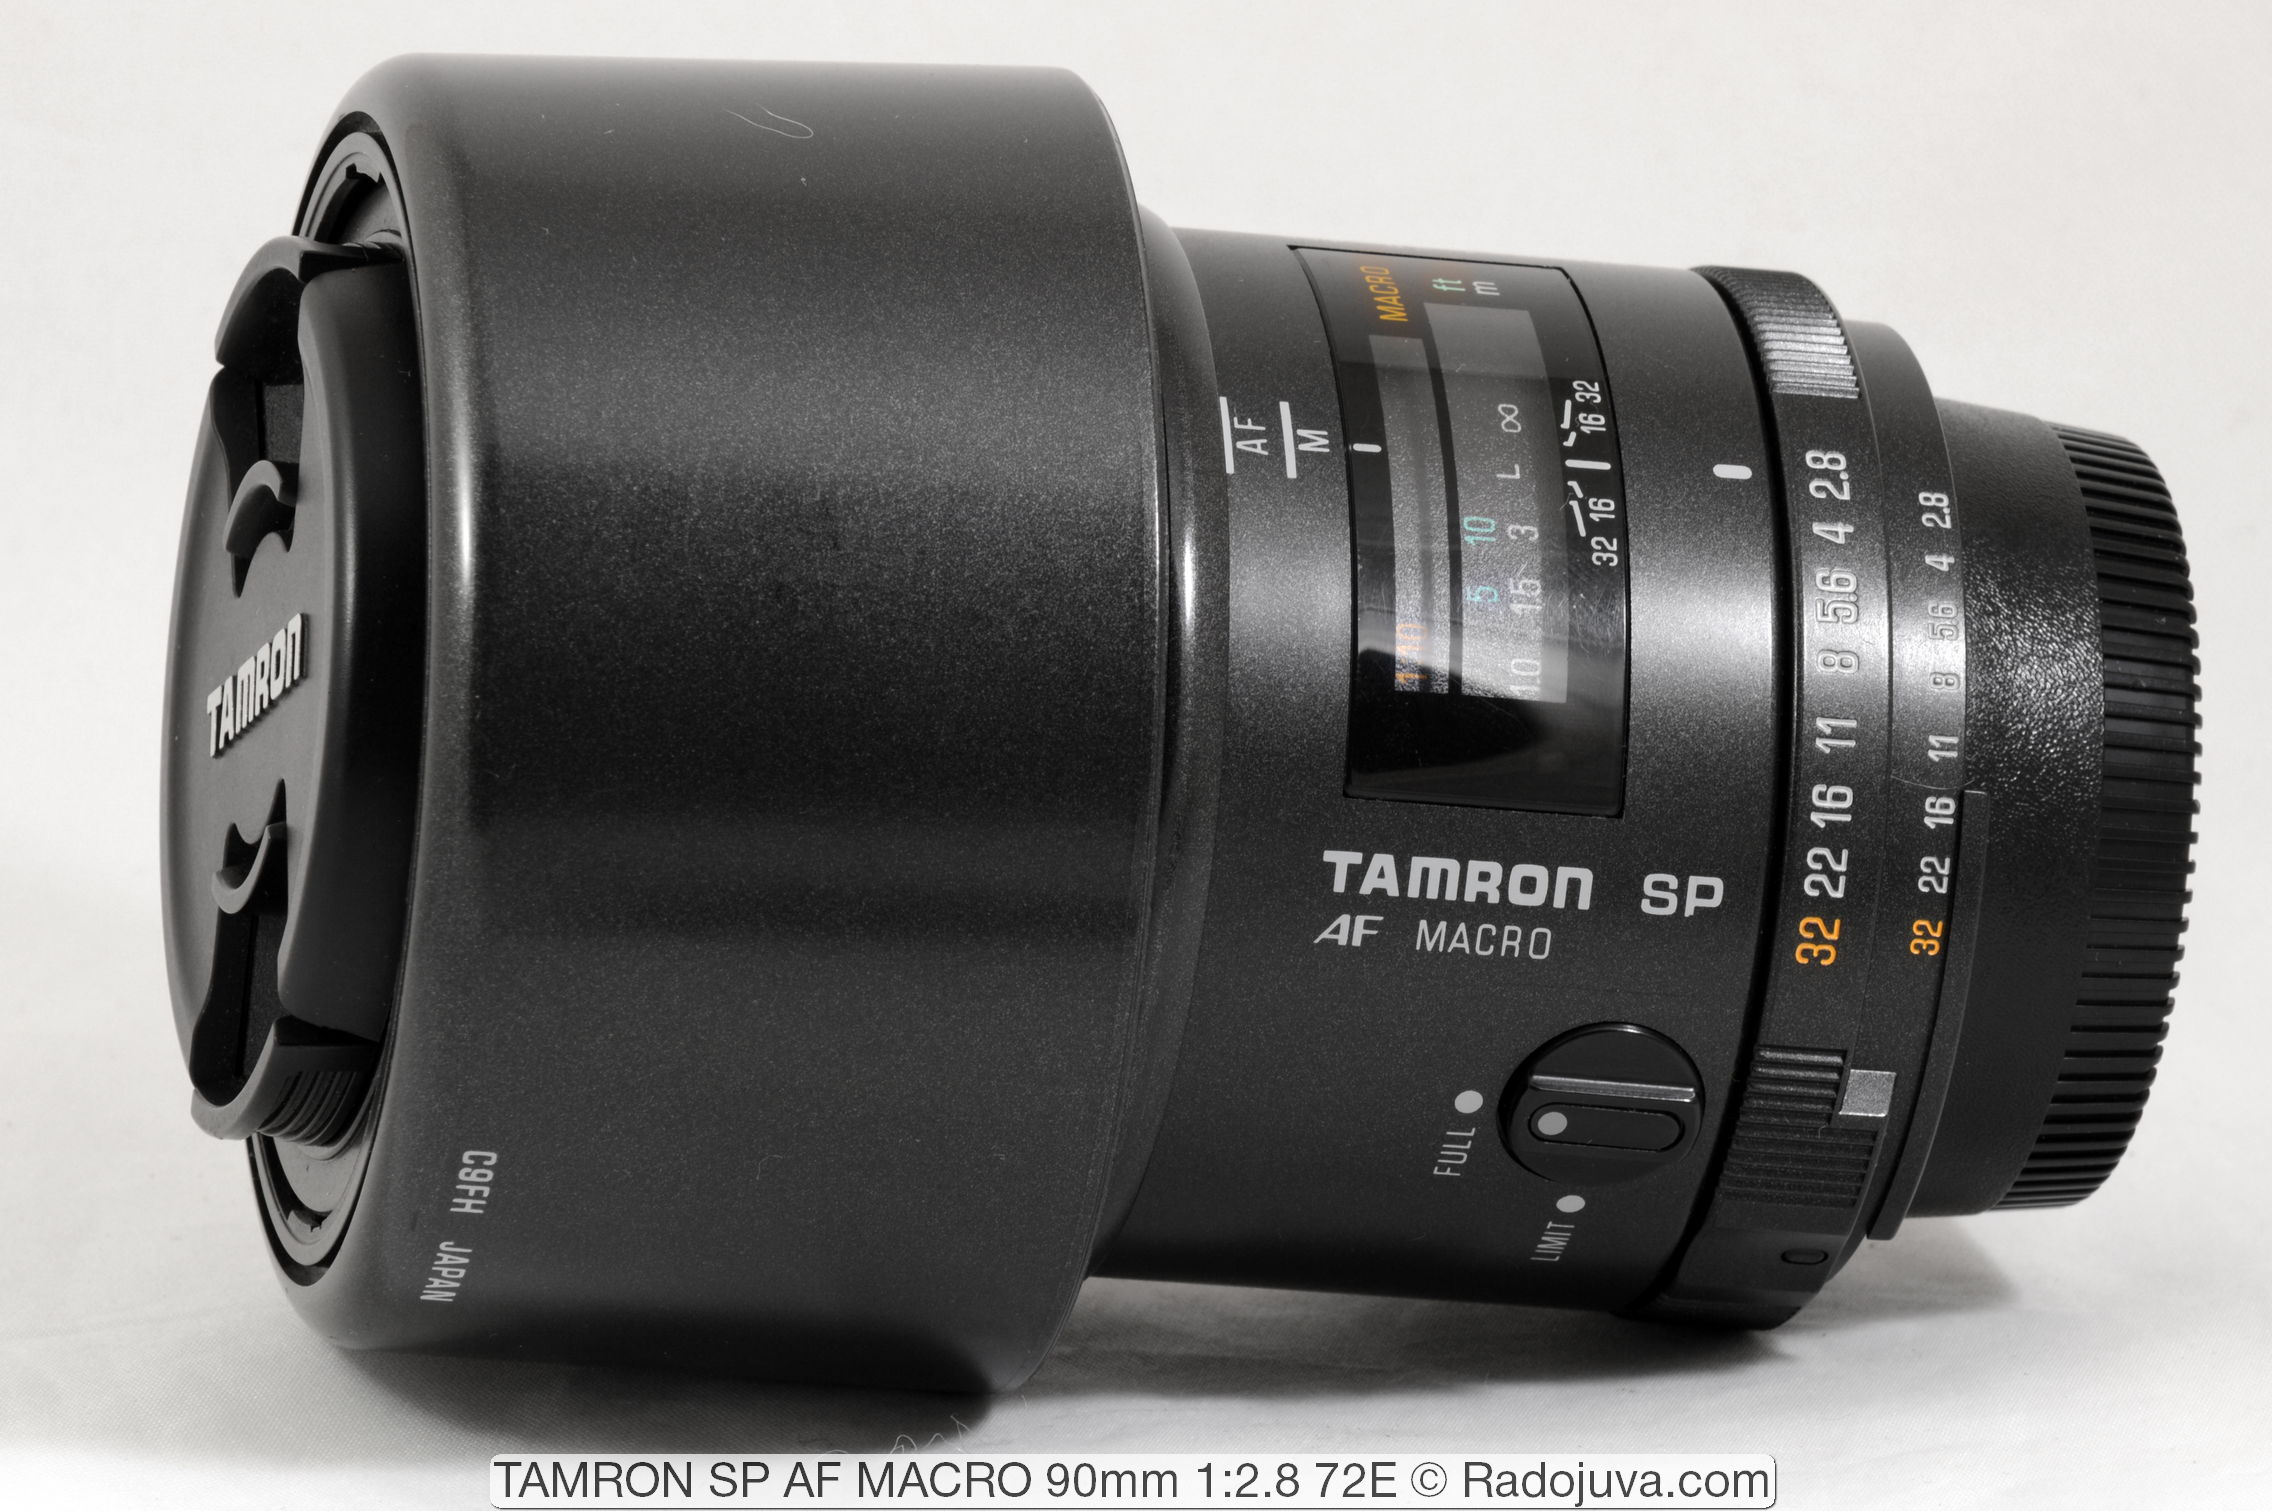 TAMRON SP AF MACRO 90mm 1: 2.8 72E